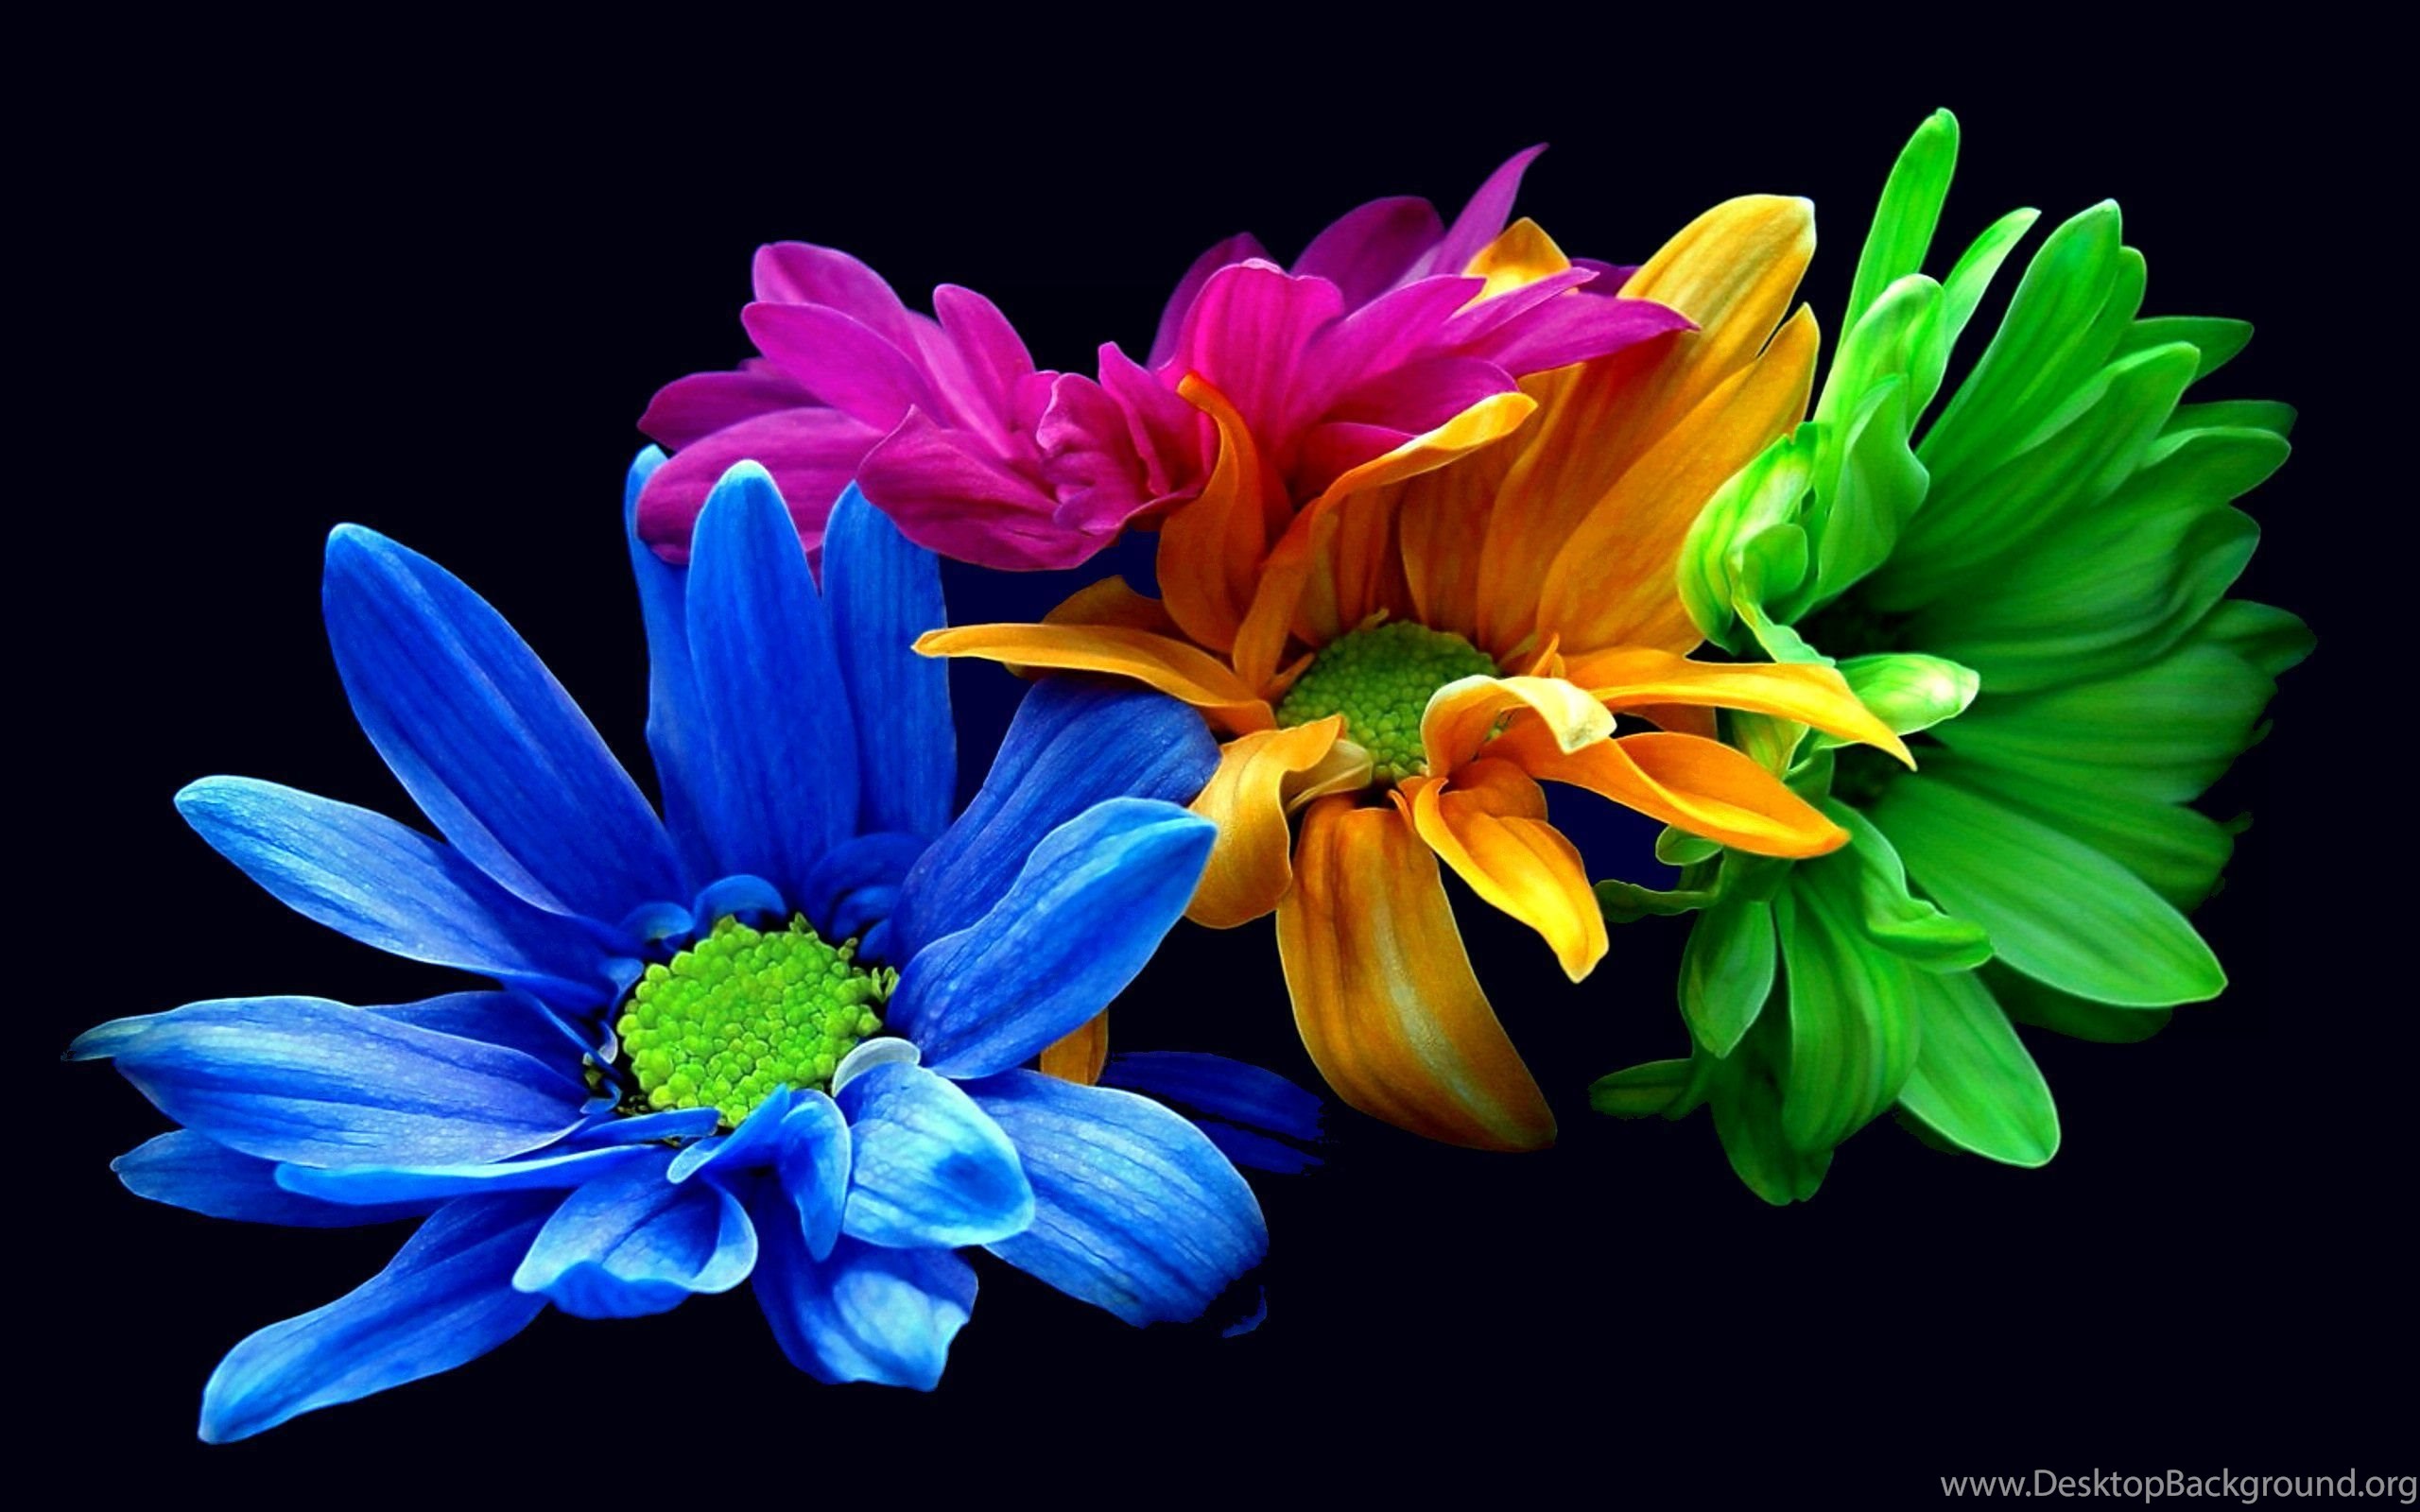 Colorful Flower Iphone Wallpapers : Nature Wallpapers Ngantukan.com ...